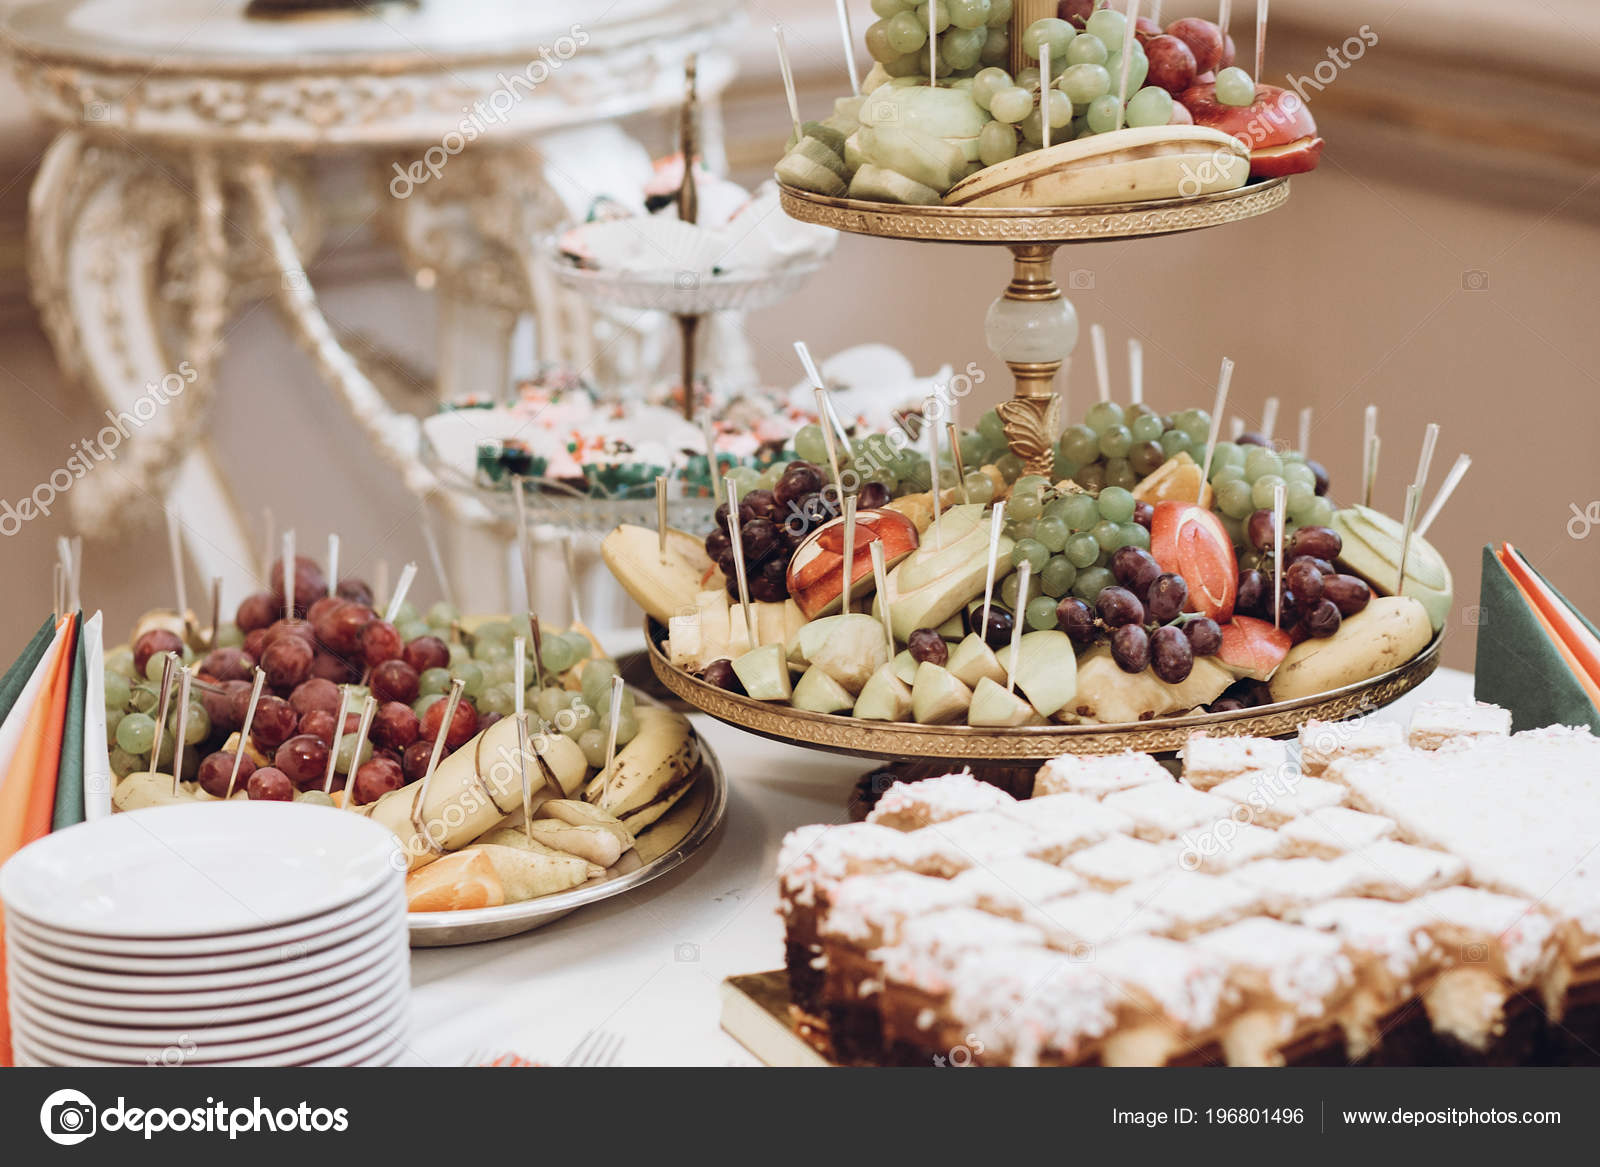 وراء كل صوره حكاية  - صفحة 44 Depositphotos_196801496-stock-photo-delicious-fruits-stand-desserts-sweet